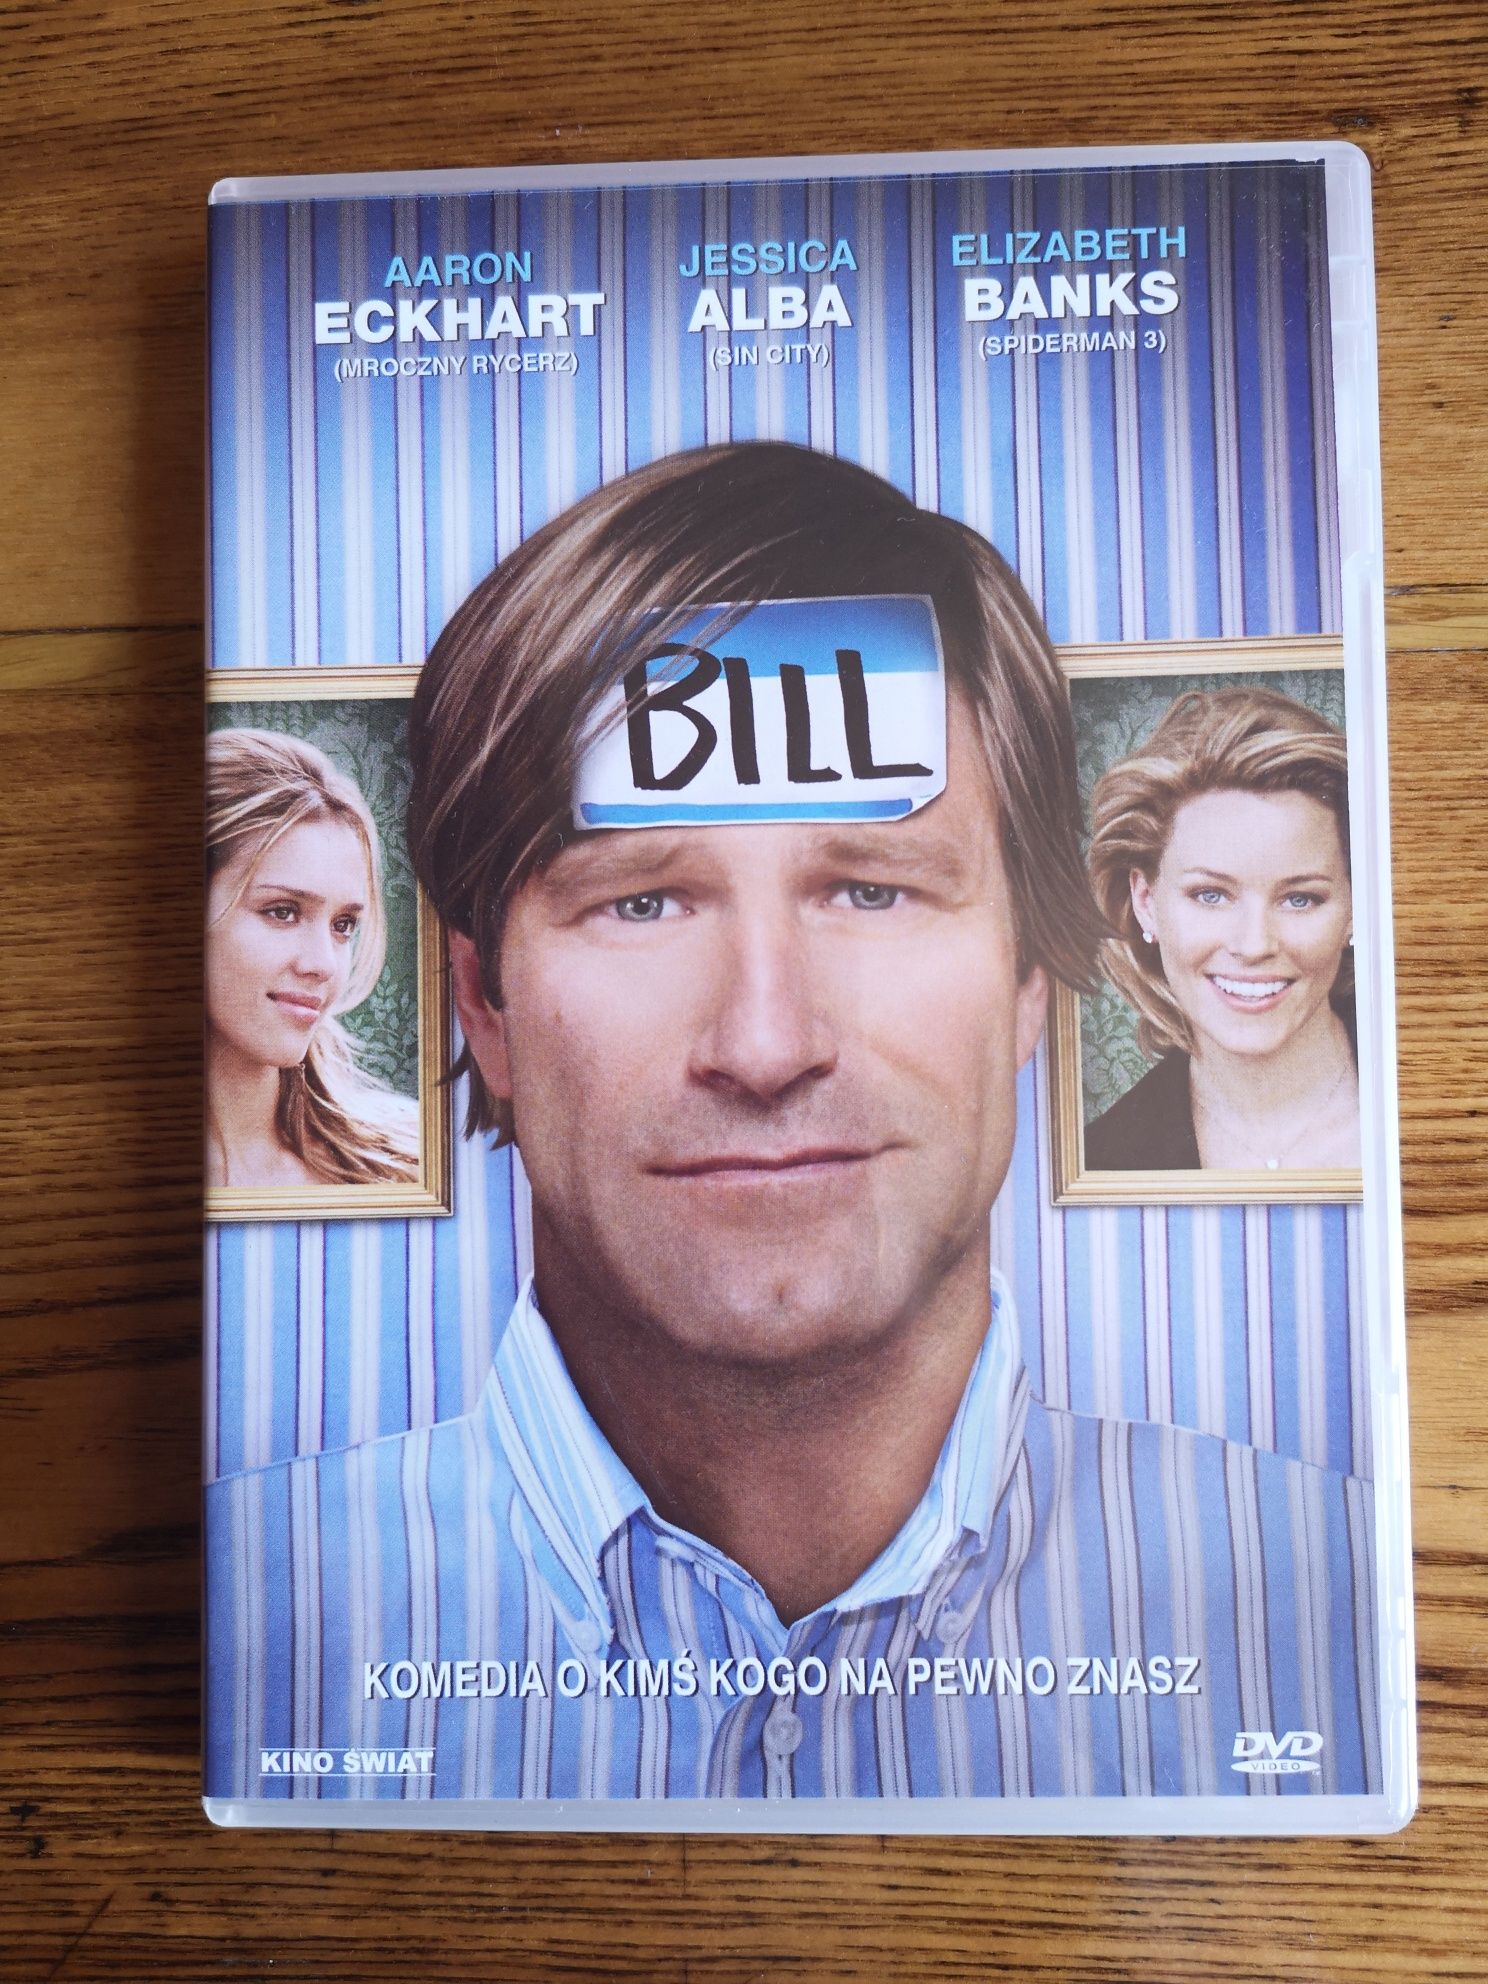 Płyta DVD:  Bill - Aaron Eckhart, Jessica Alba, Elizabeth Banks